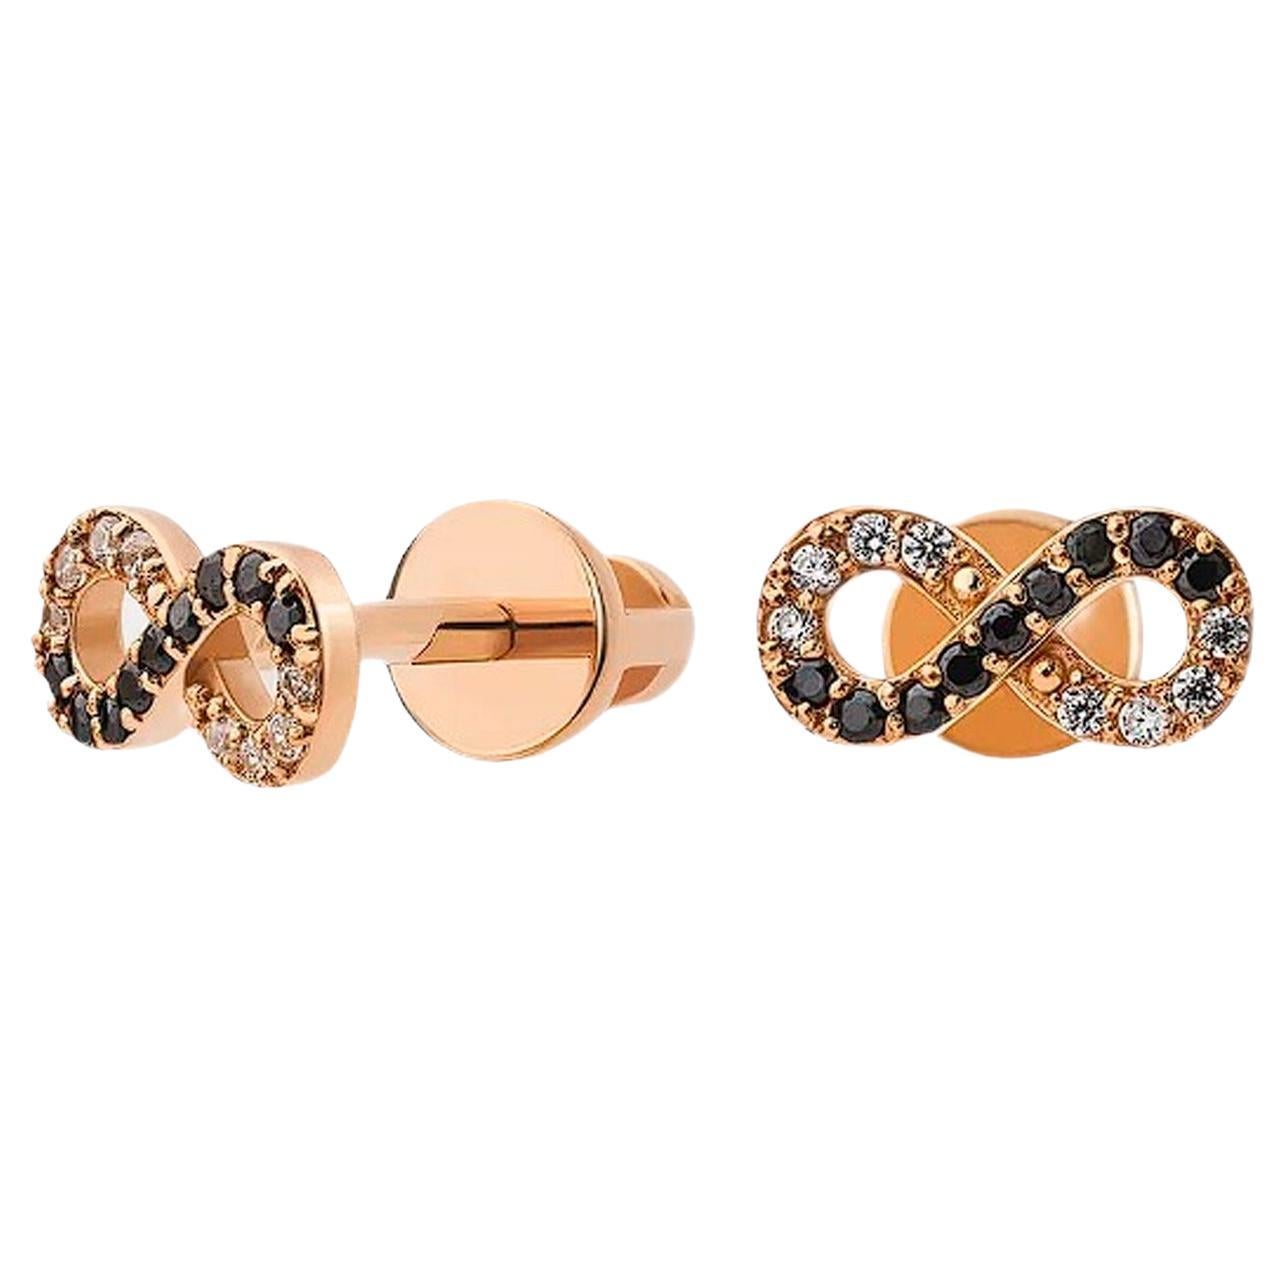 Infinity earrings studs in 14k gold. For Sale